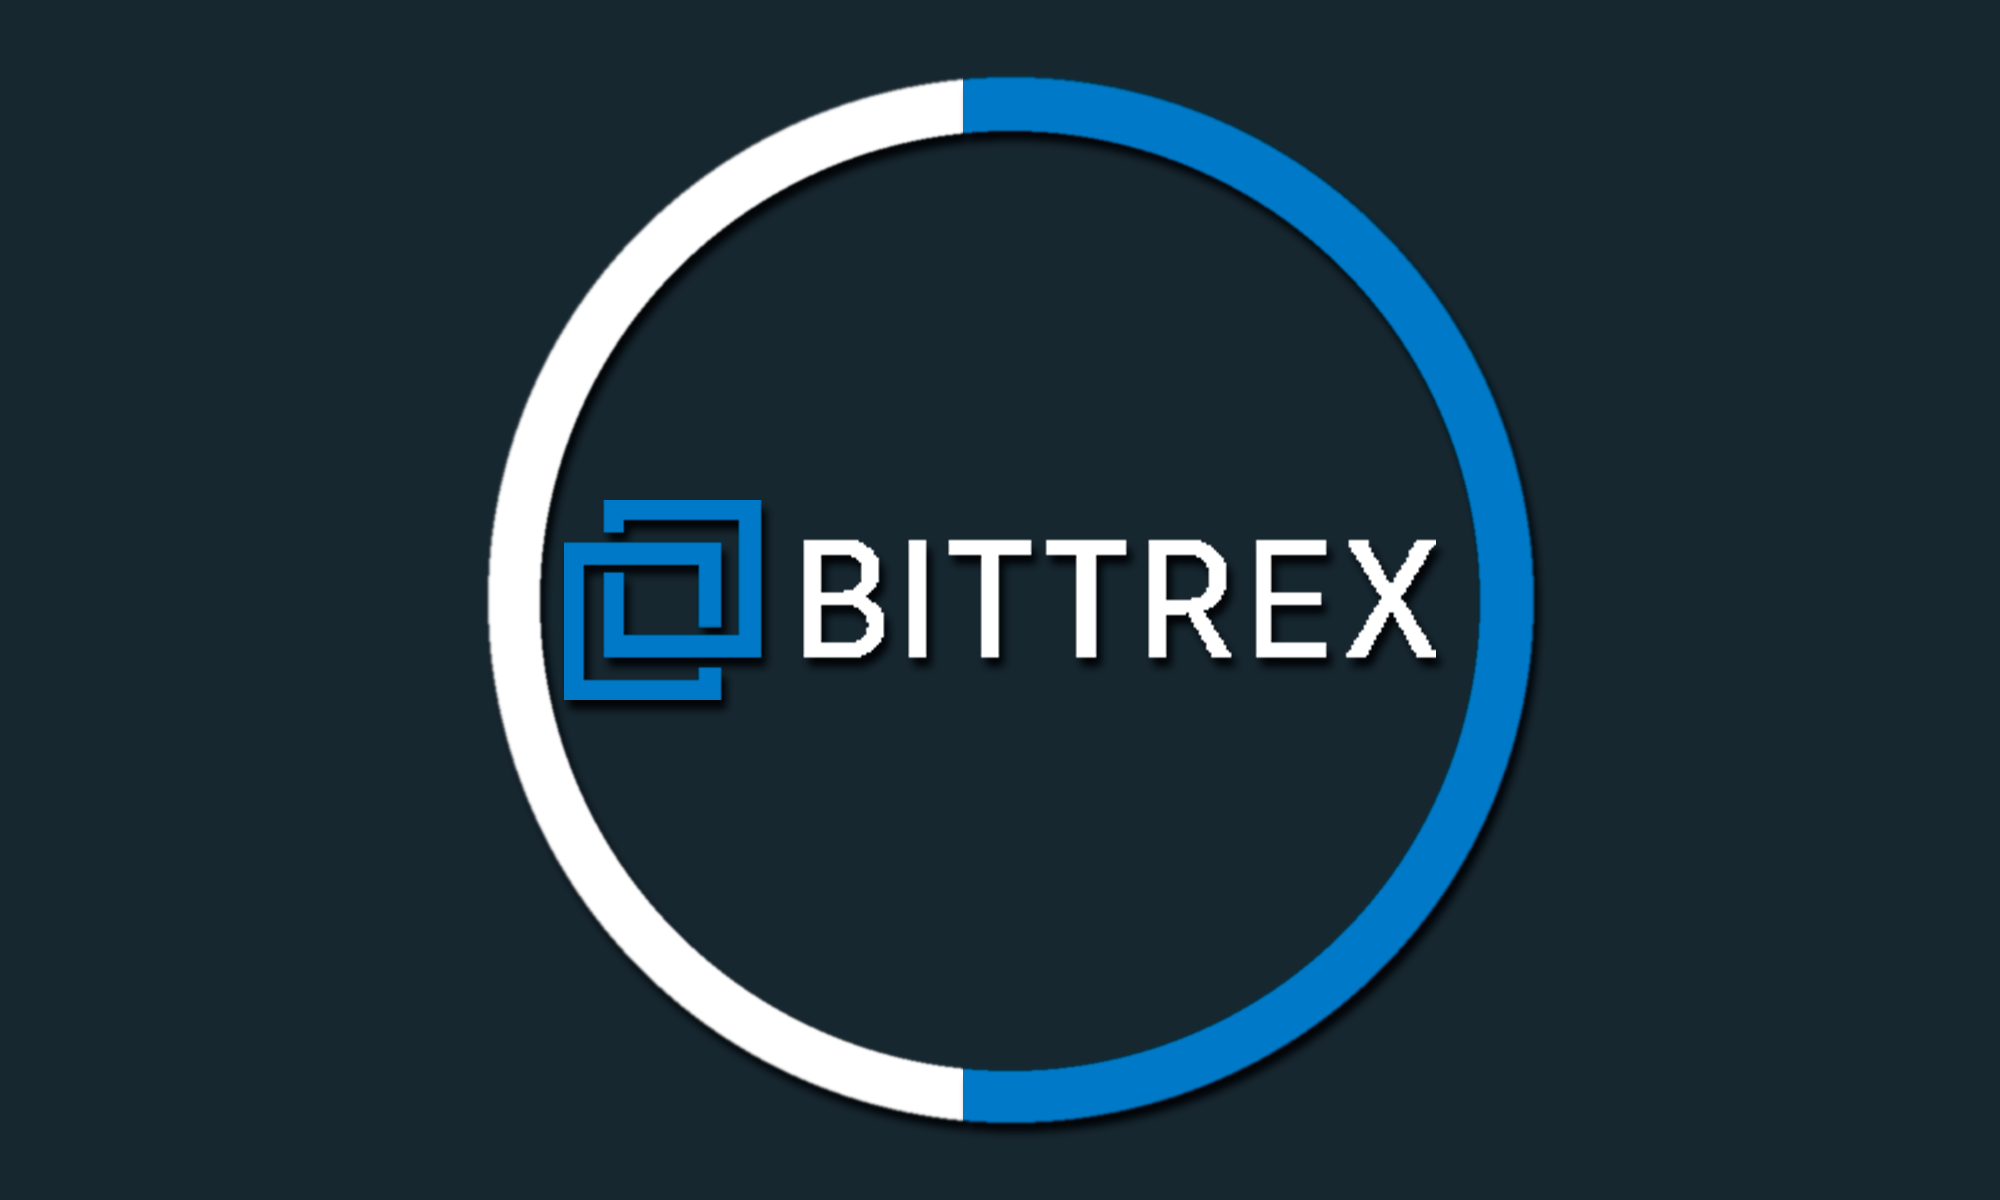 Bitrex